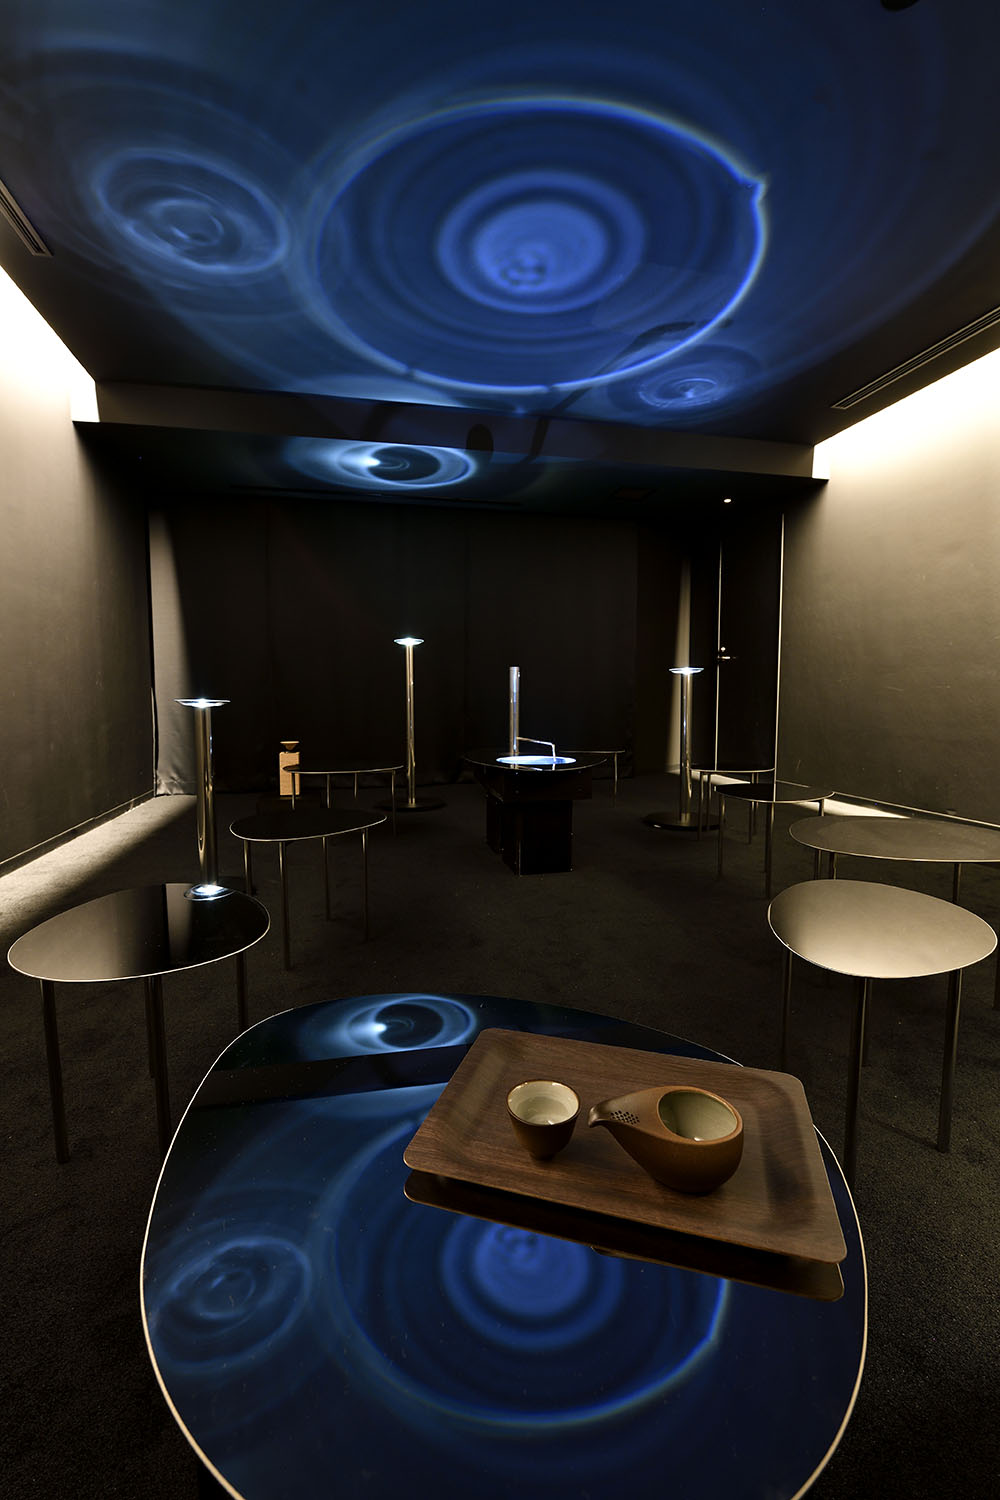 幻想的な空間で穏やかな癒やしへと導くメディテーションルームは、東京・南青山「Medicha」による監修。